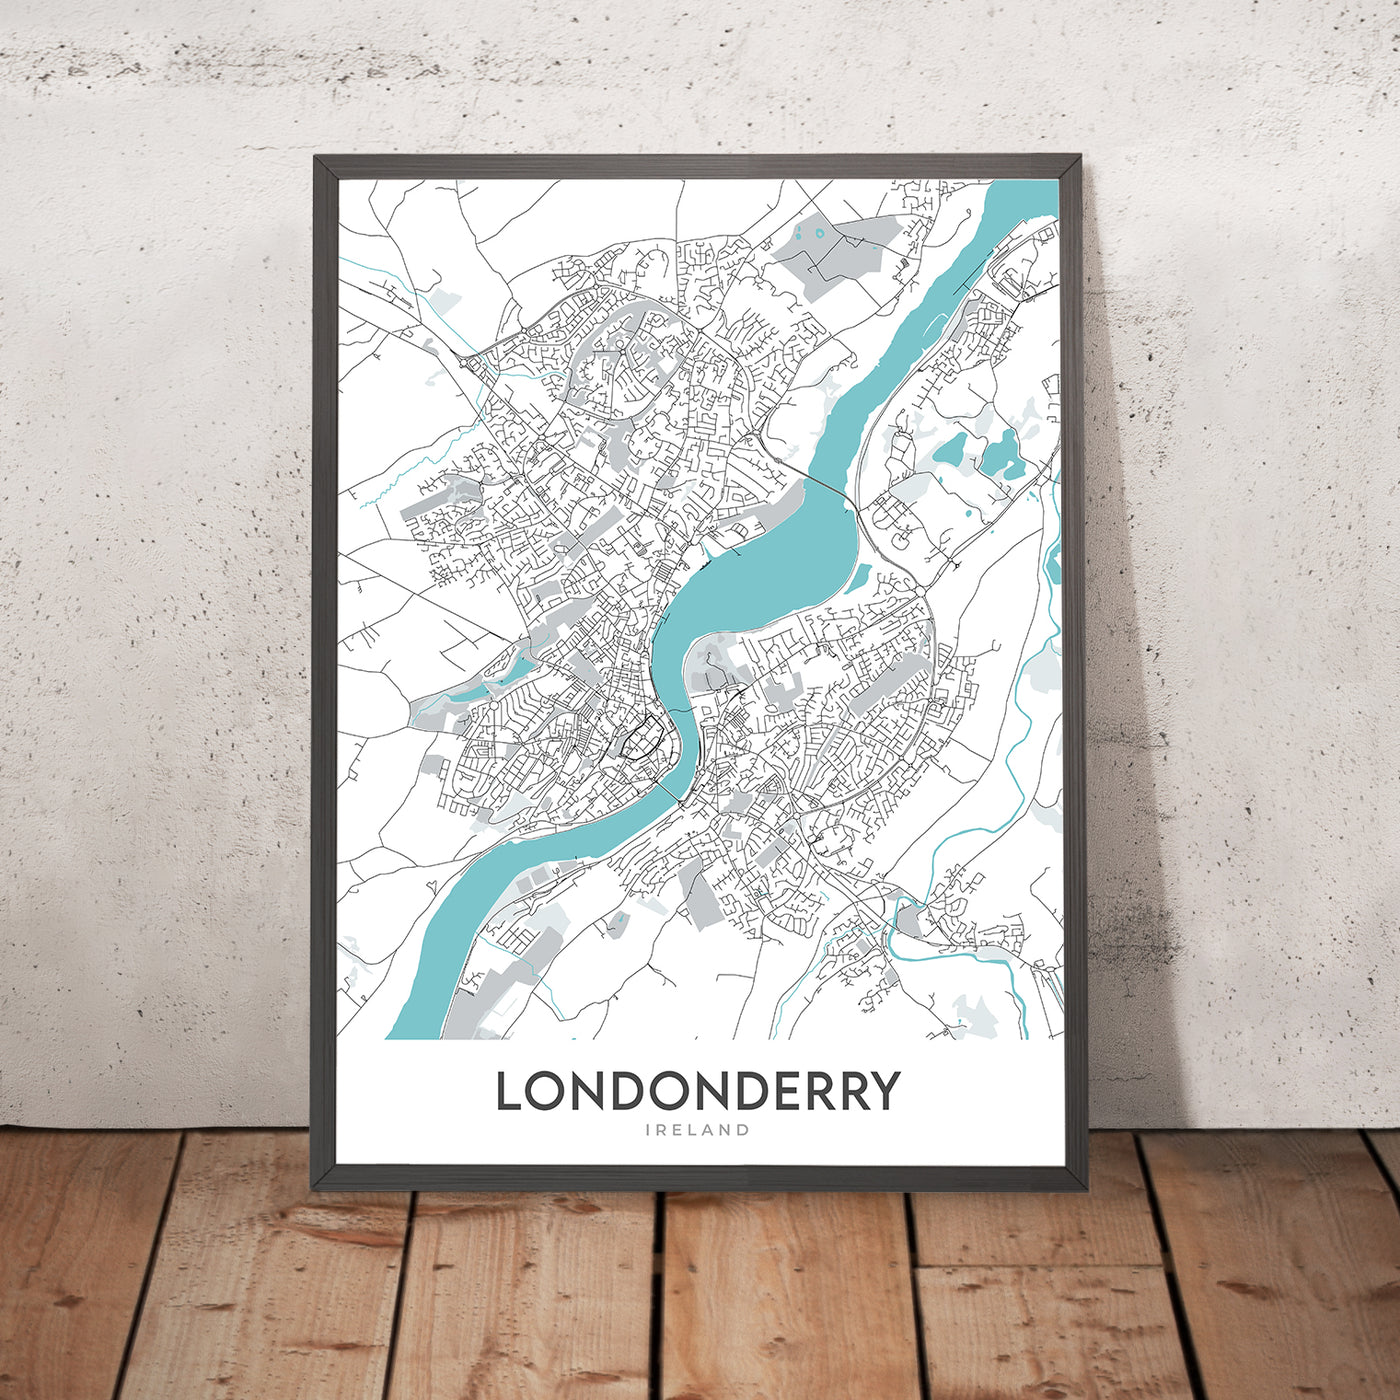 Moderner Stadtplan von Londonderry, Irland: Bogside, Brandywell, Craigavon Bridge, Foyle Bridge, Guildhall